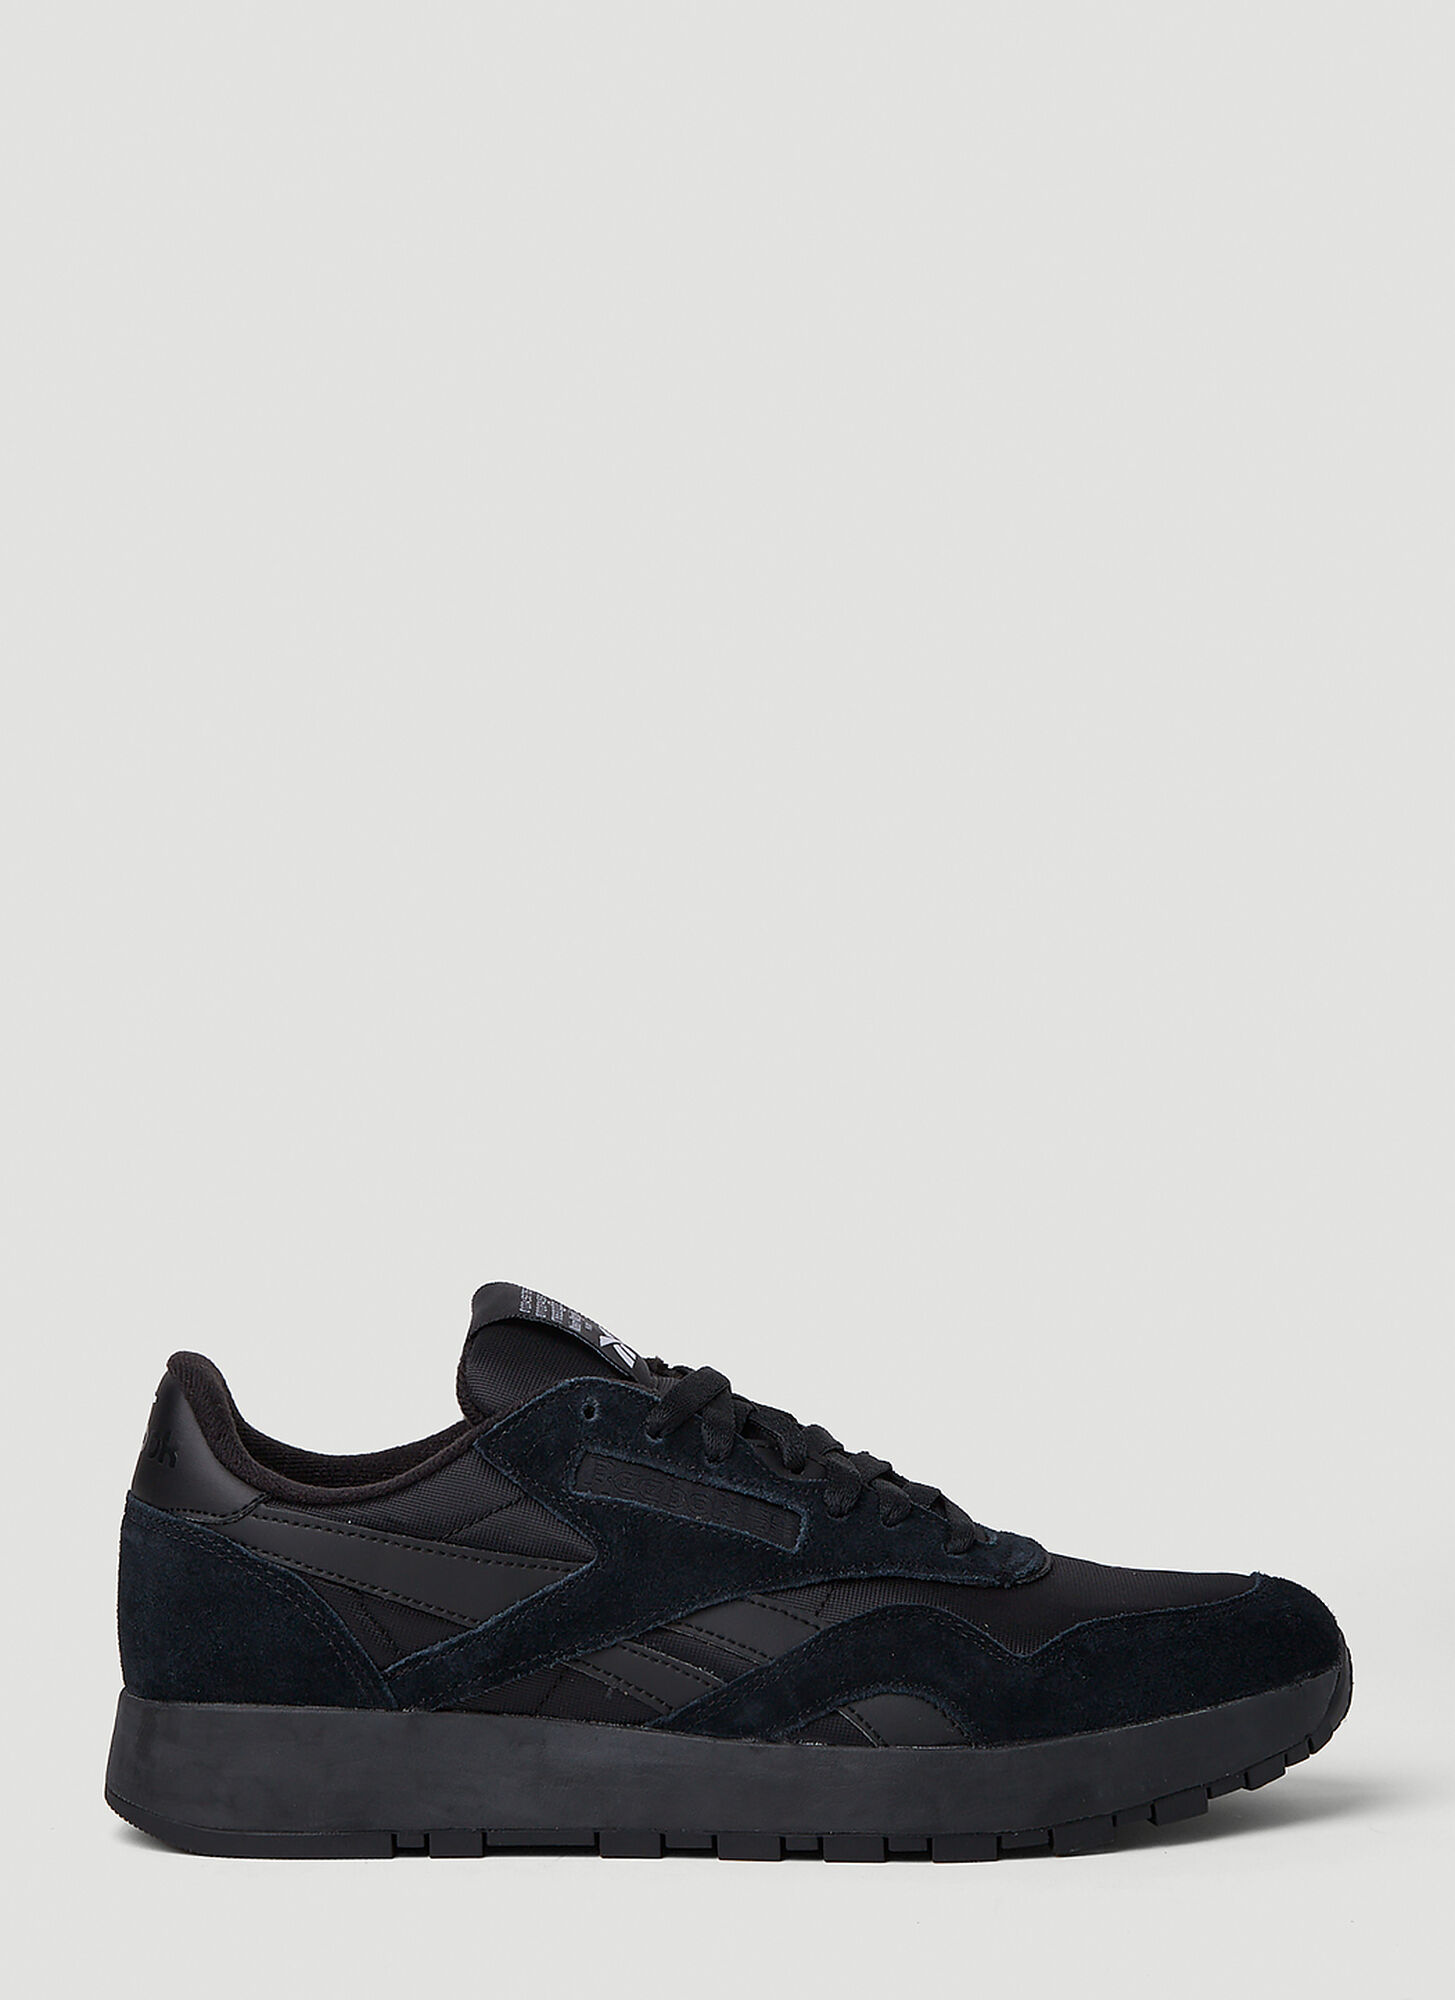 Maison Margiela X Reebok Project 0 Cl Sneakers In Black